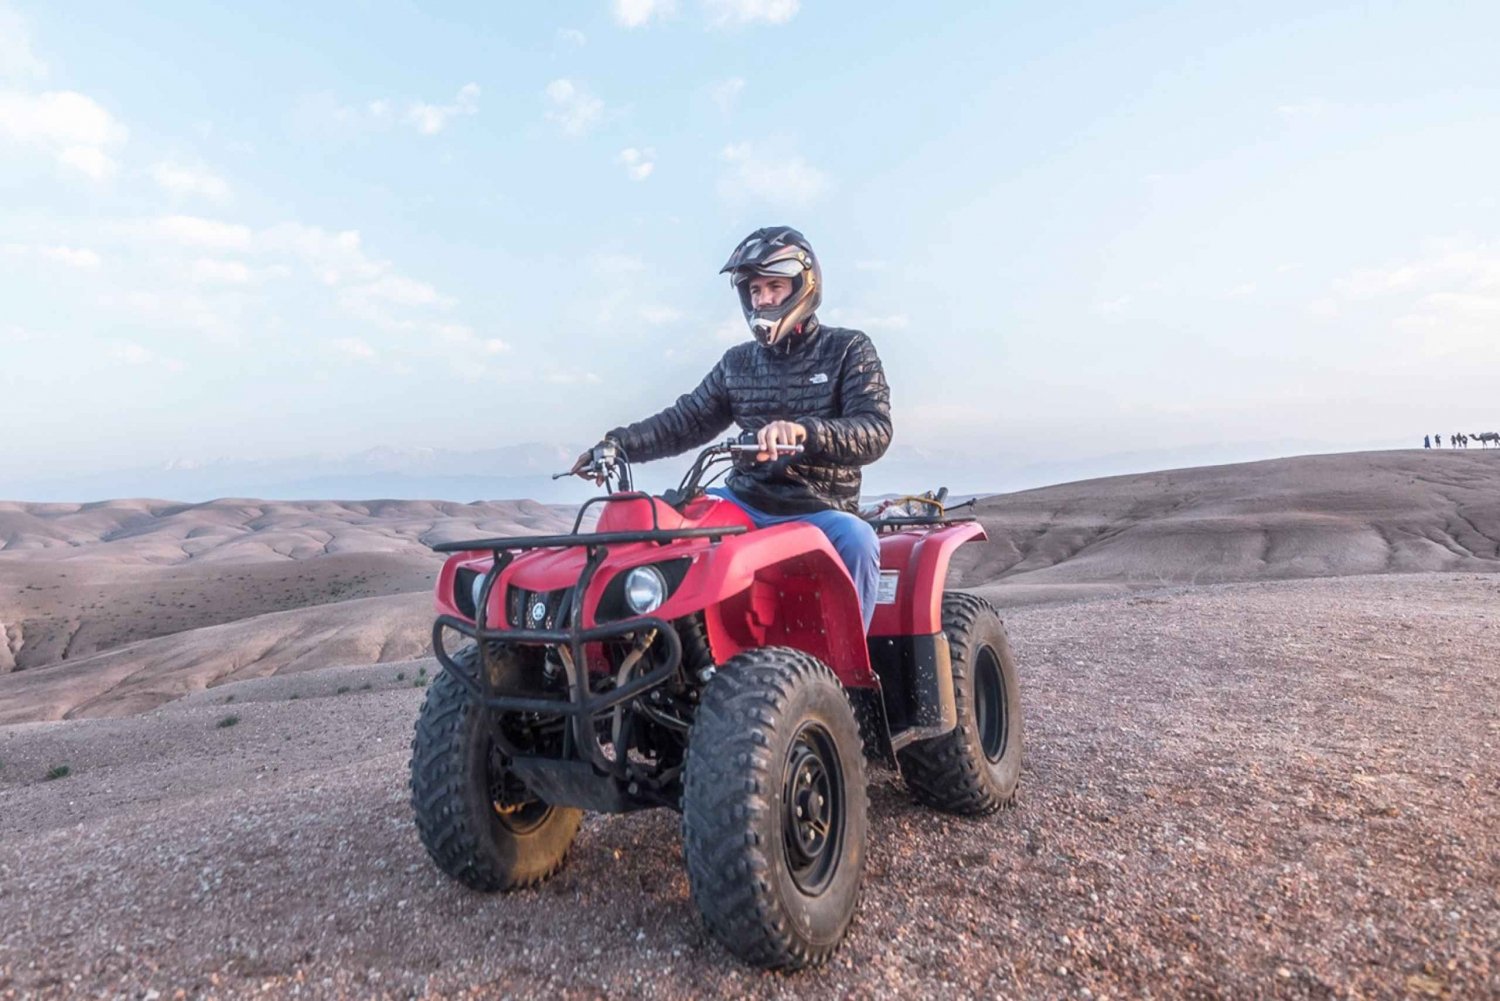 Desde Marrakech: Excursión de medio día en quad por el desierto de Agafay